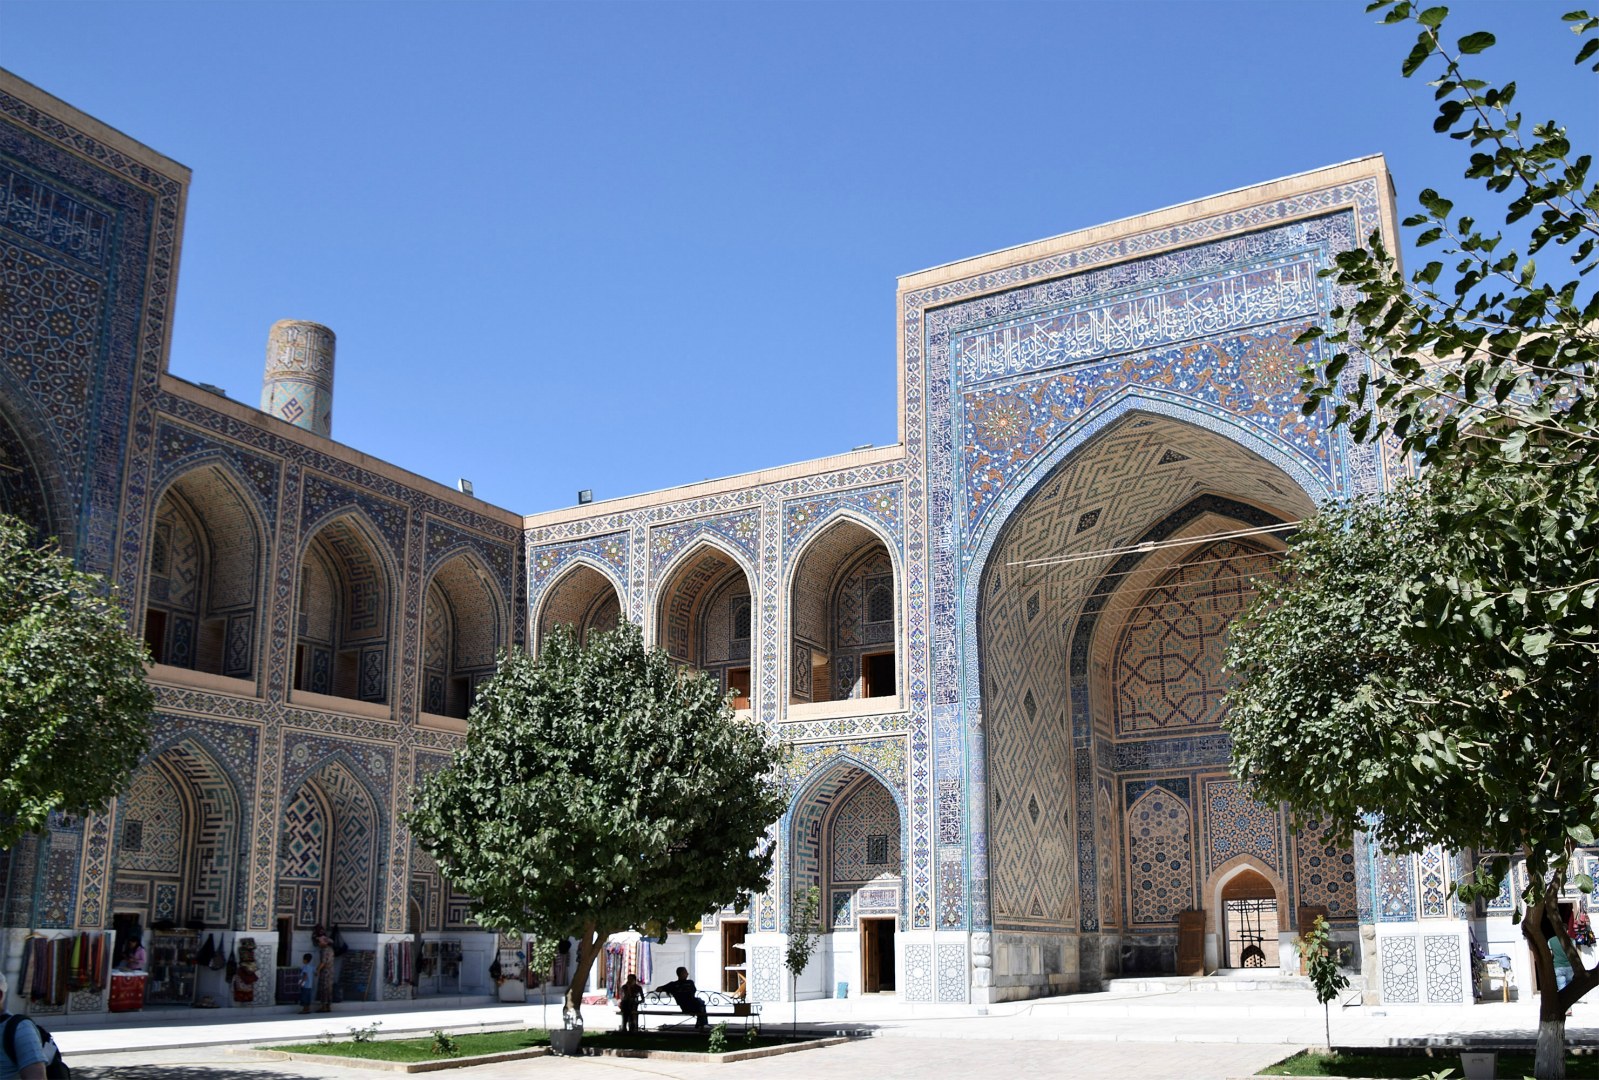 Ulugh Beg Madrassa, Samarkand